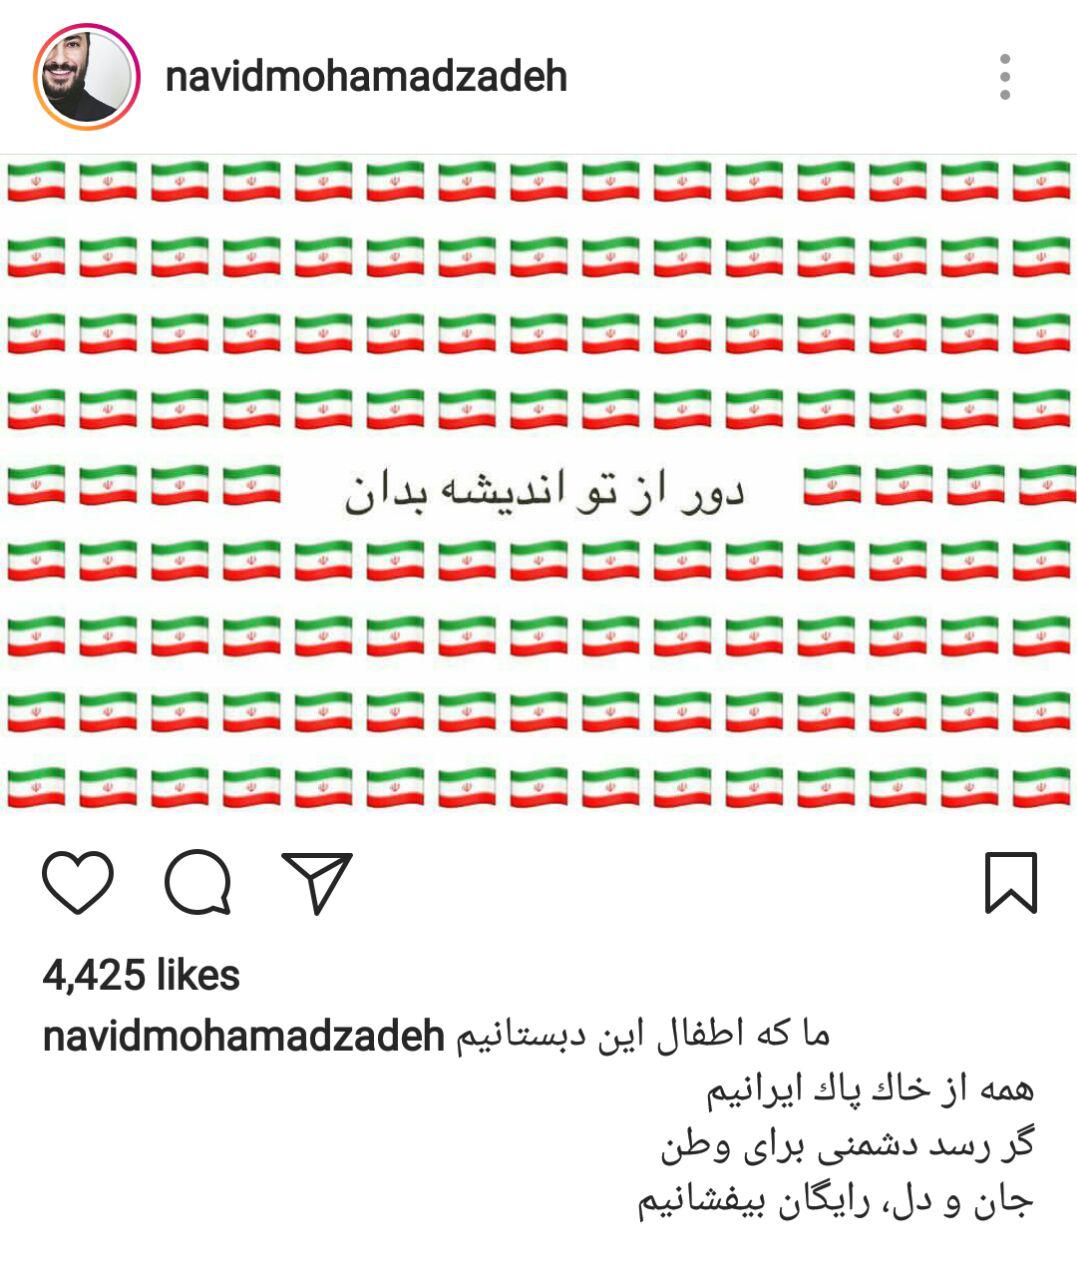 واکنش هنرمندان به حادثه تروریستی امروز تهران